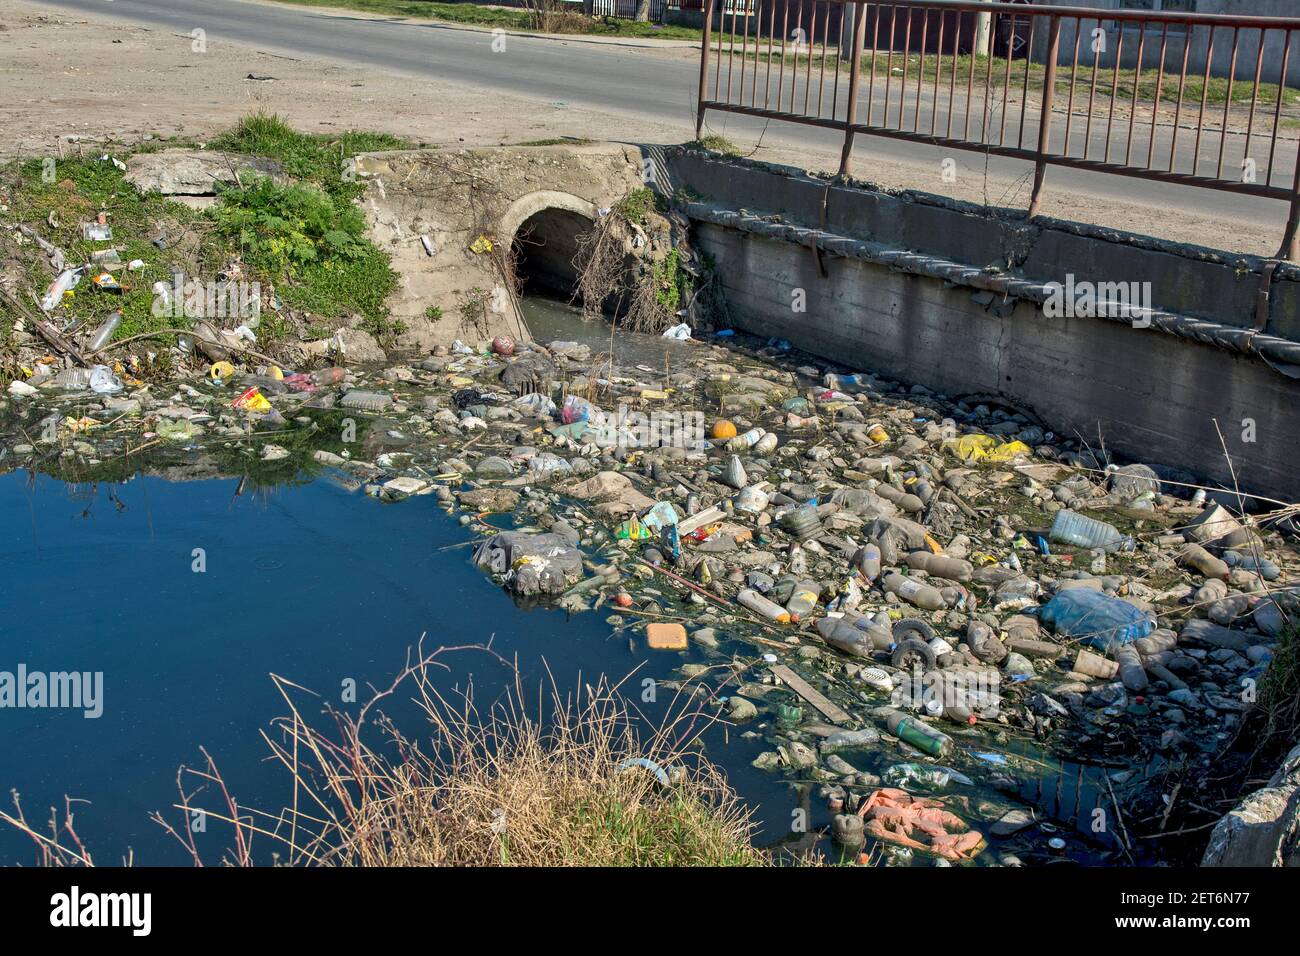 Zrenjanin, Serbien, 01. März 2021. Bild von menschlicher Fahrlässigkeit und ökologischer Katastrophe am Kanal mit Wasser und Umgebung. Jedes Leben in Stockfoto